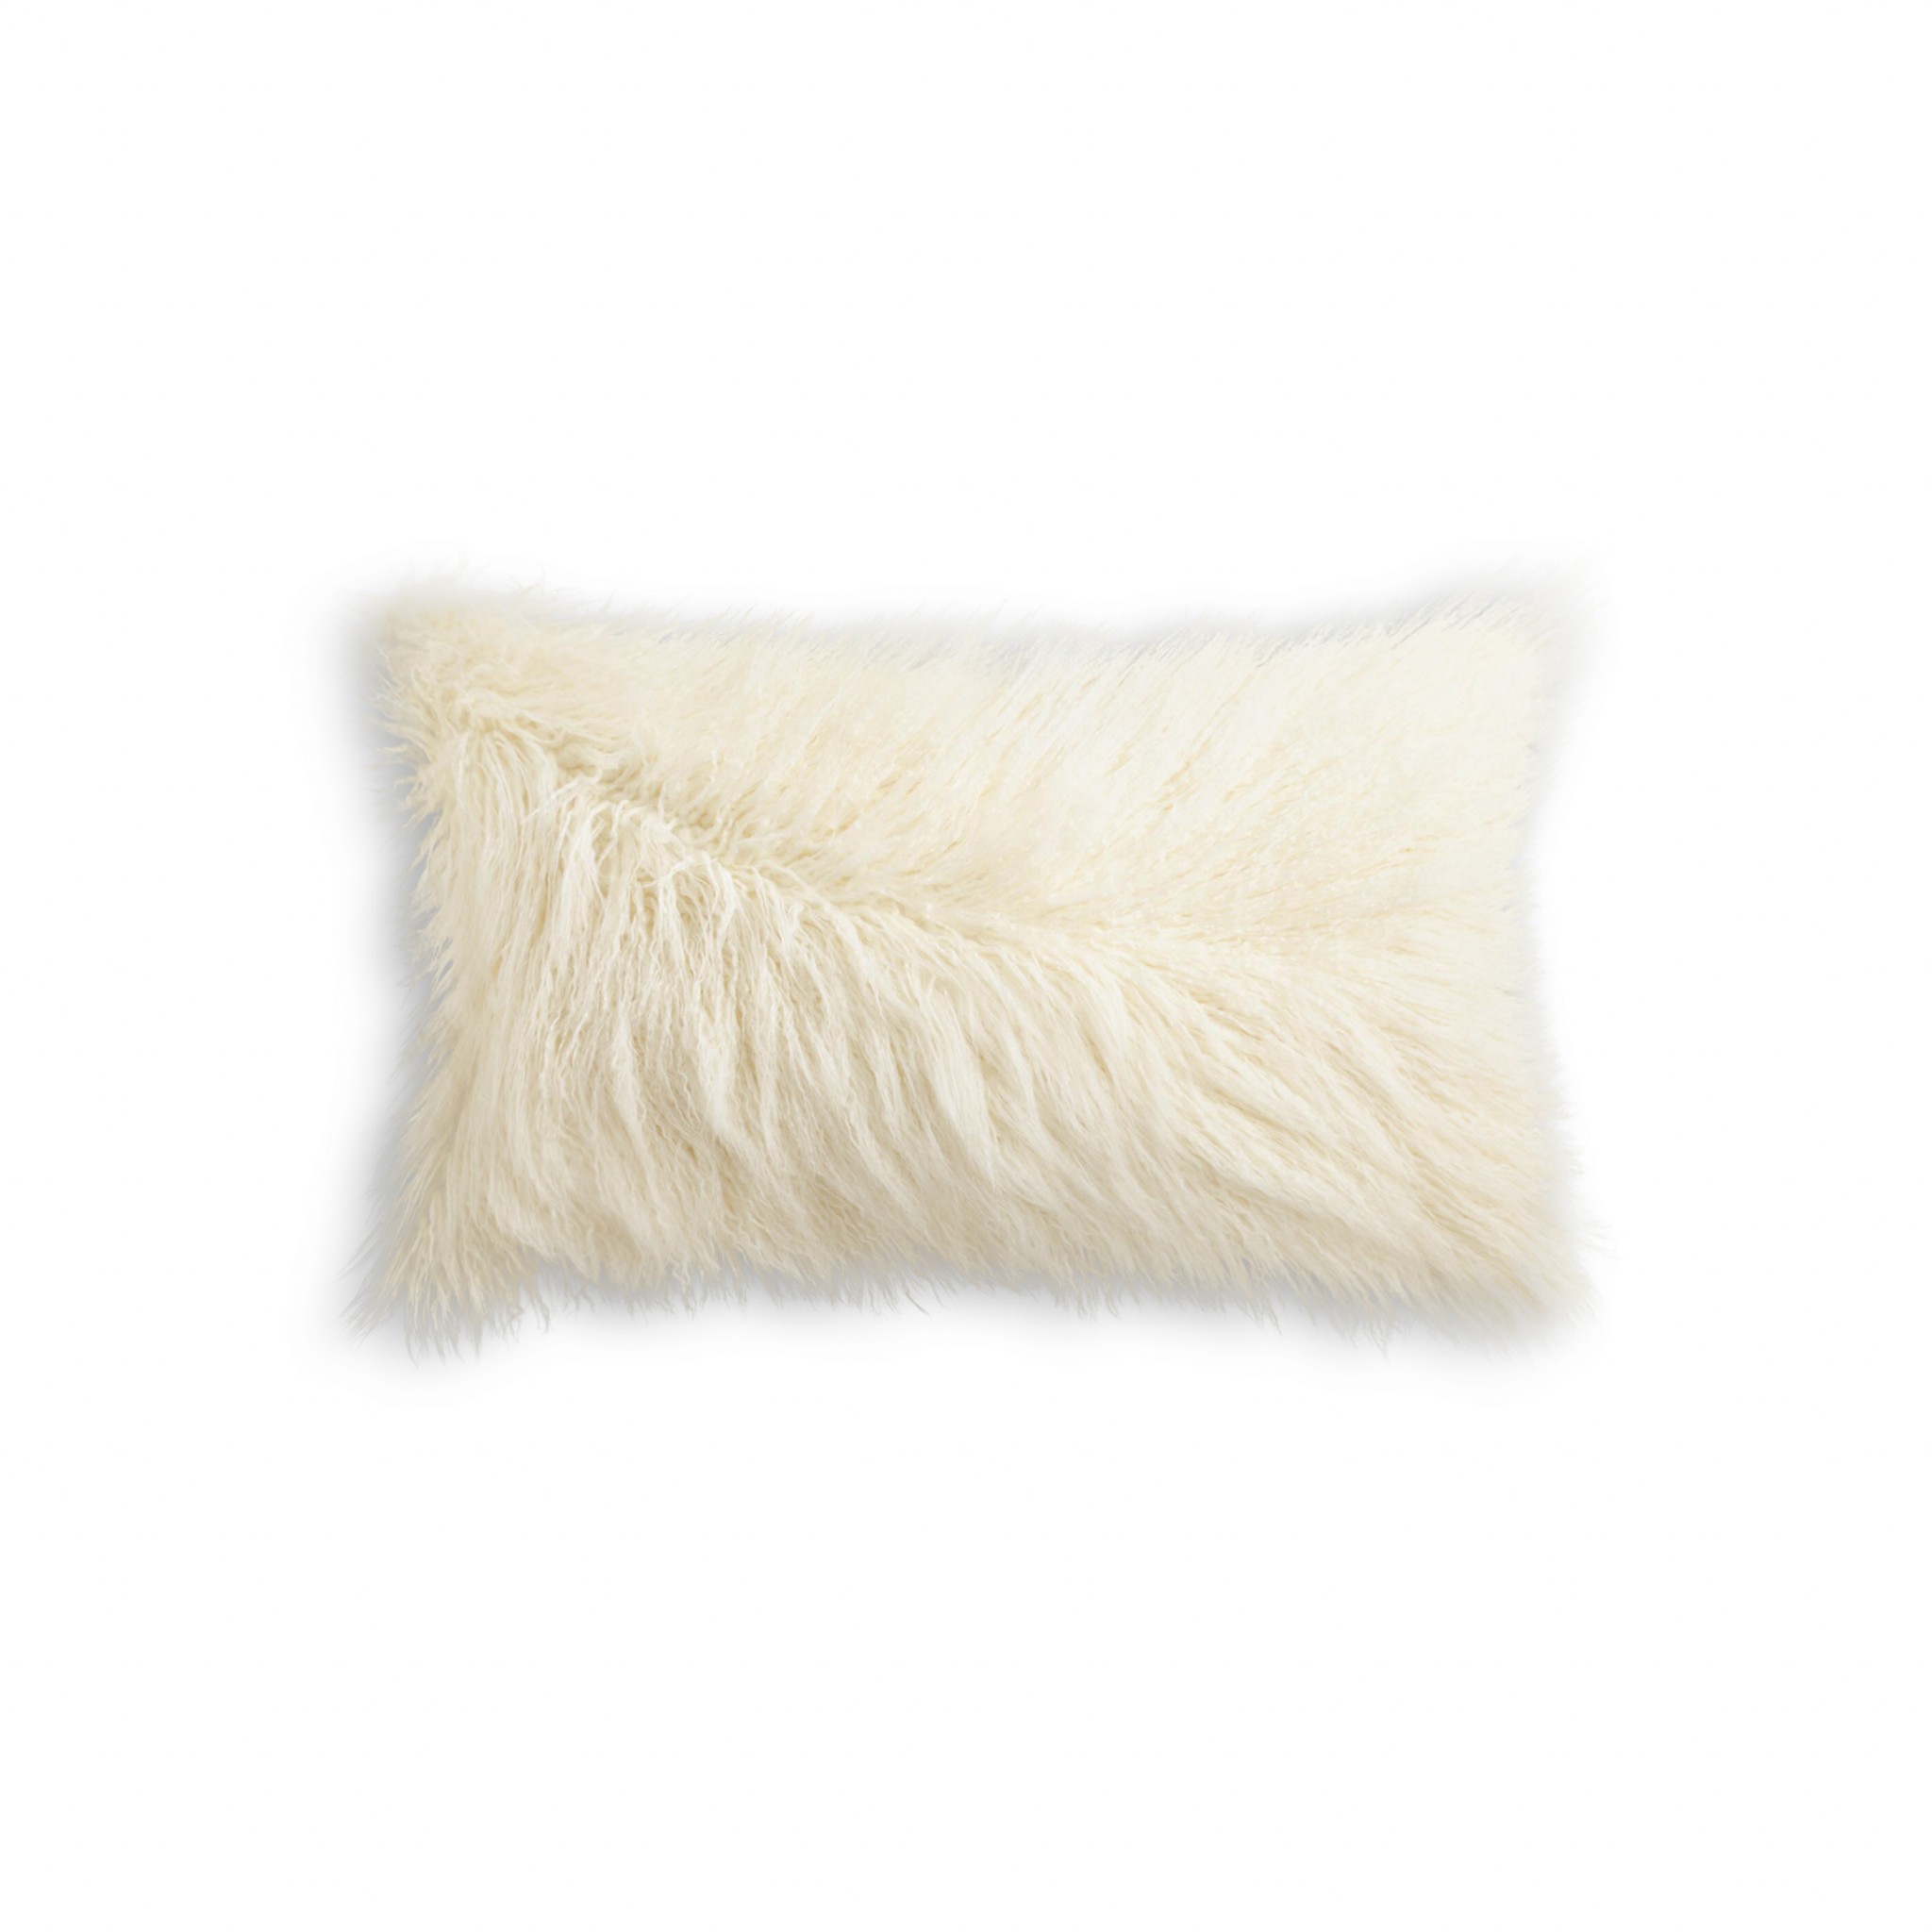 12" x 20" x 5" Stone White, Faux Sheepskin - Pillow